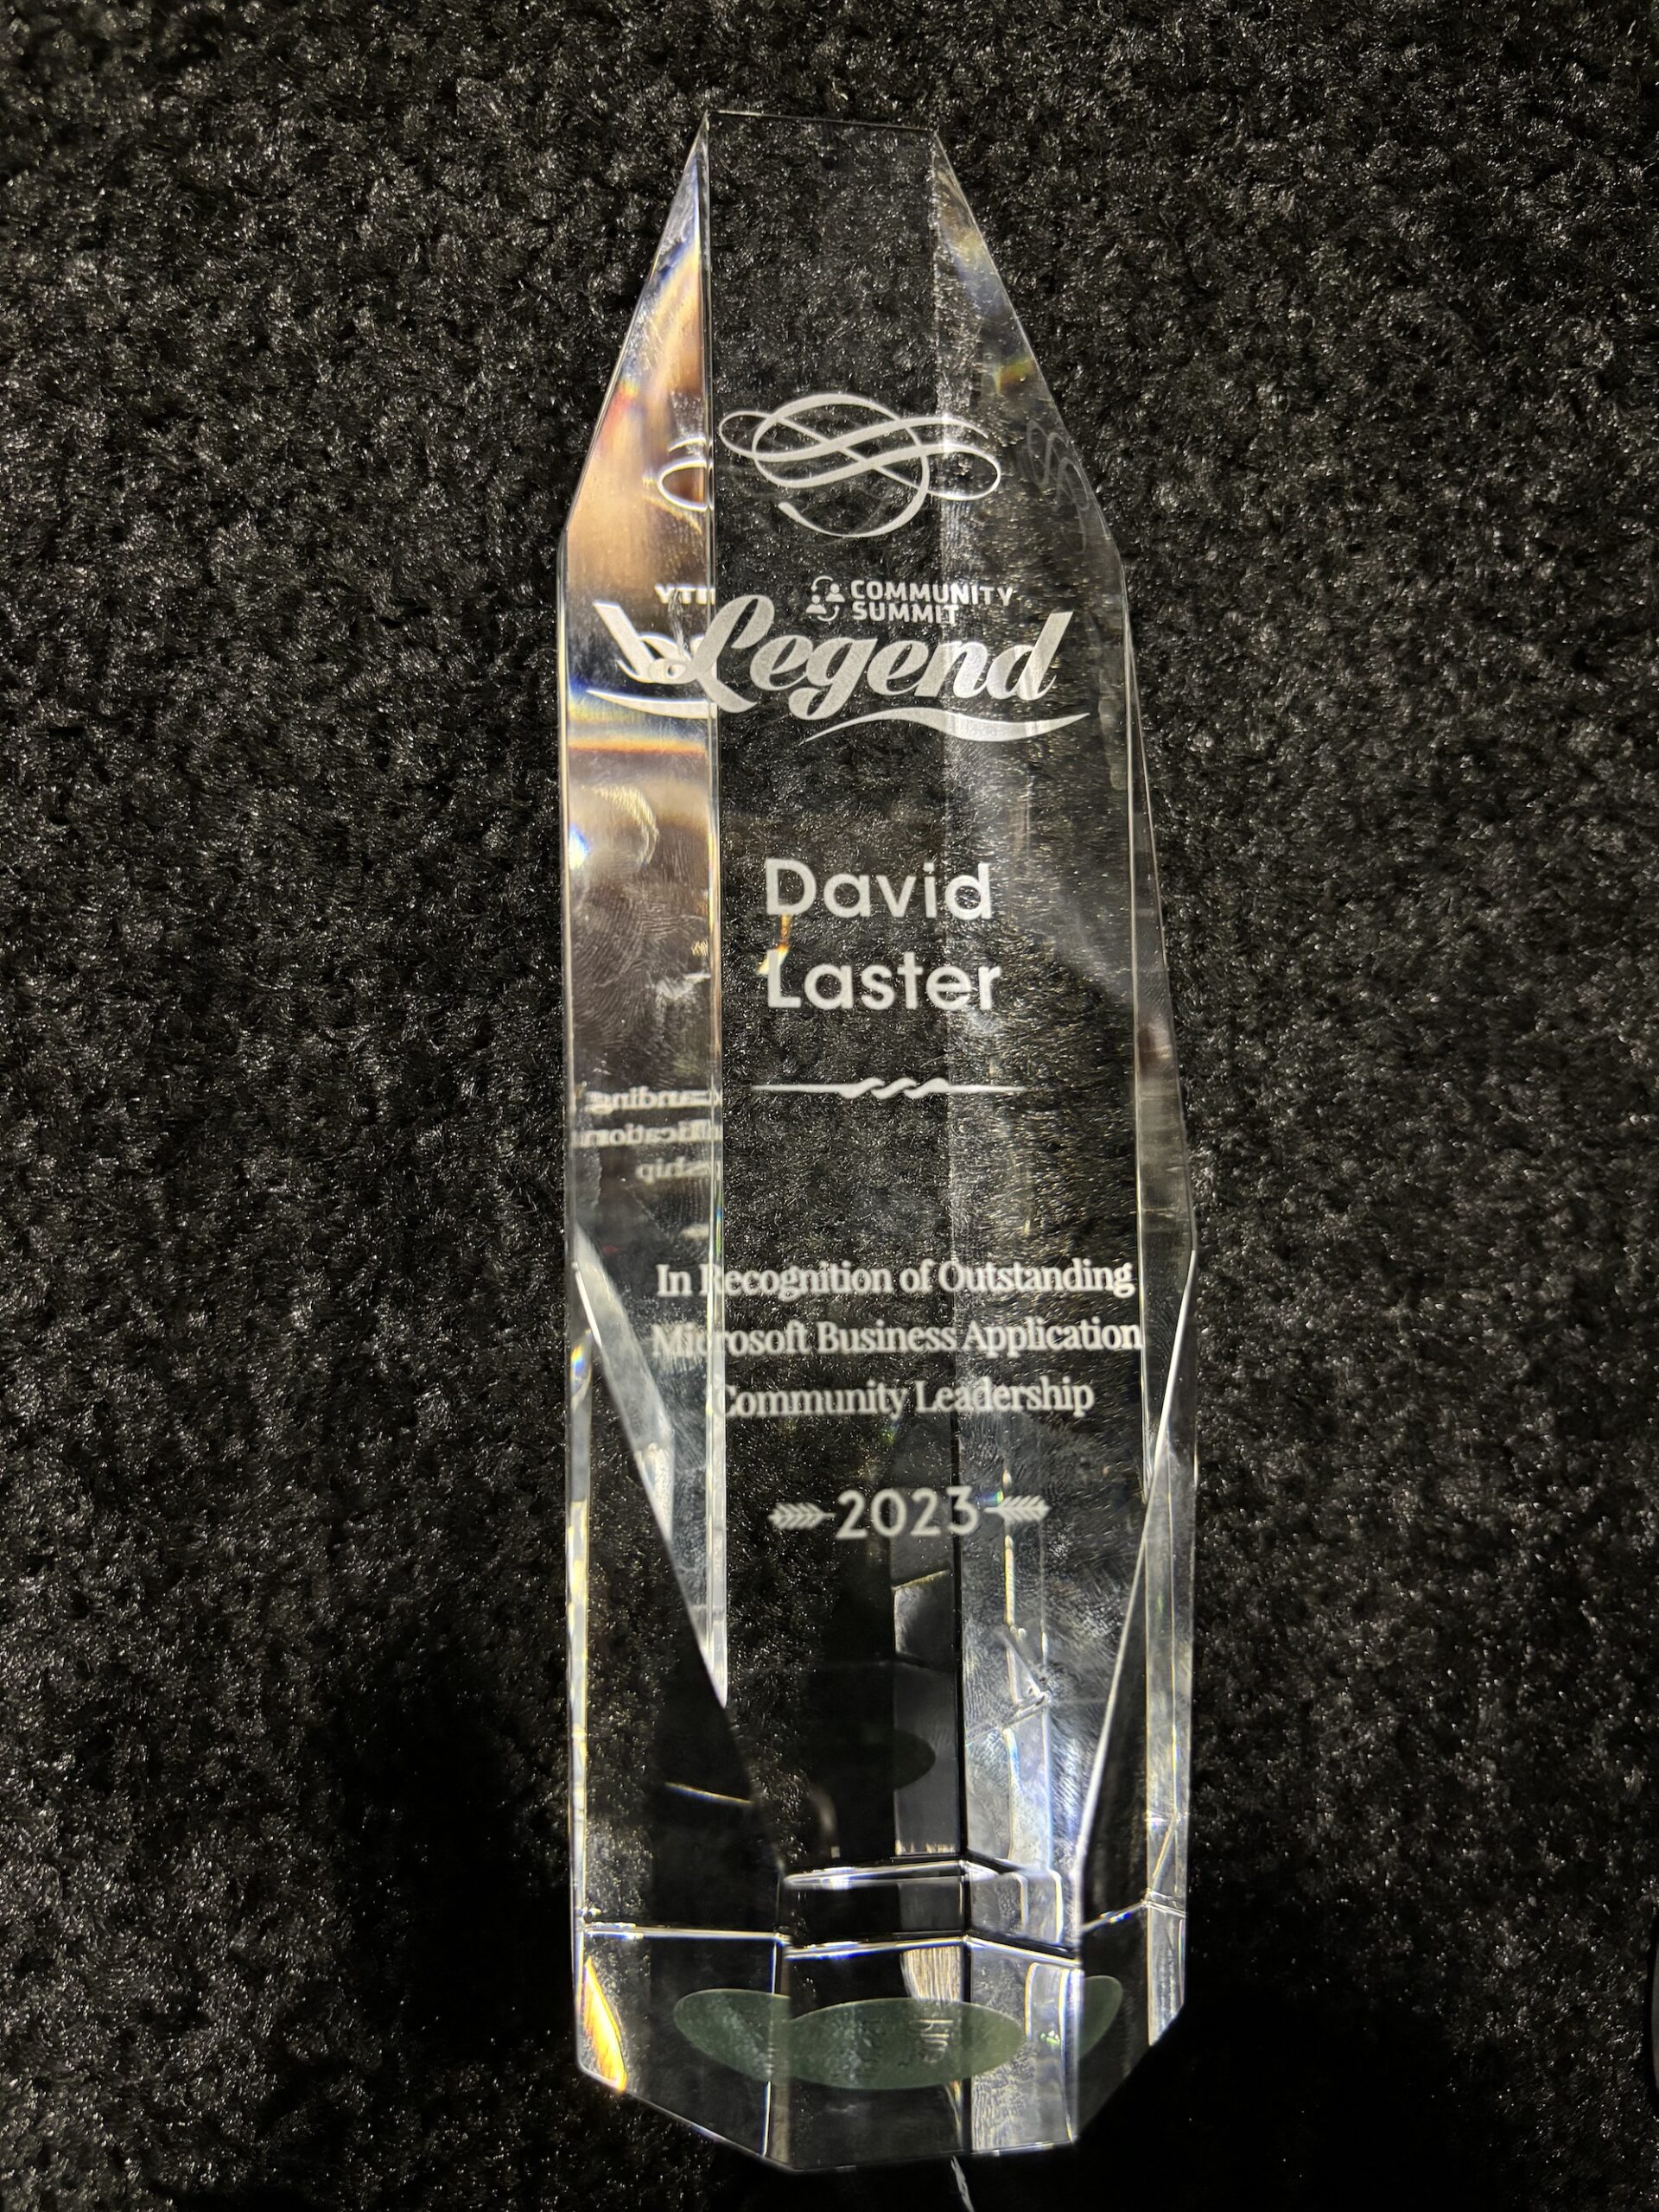 David Laster summit legend award